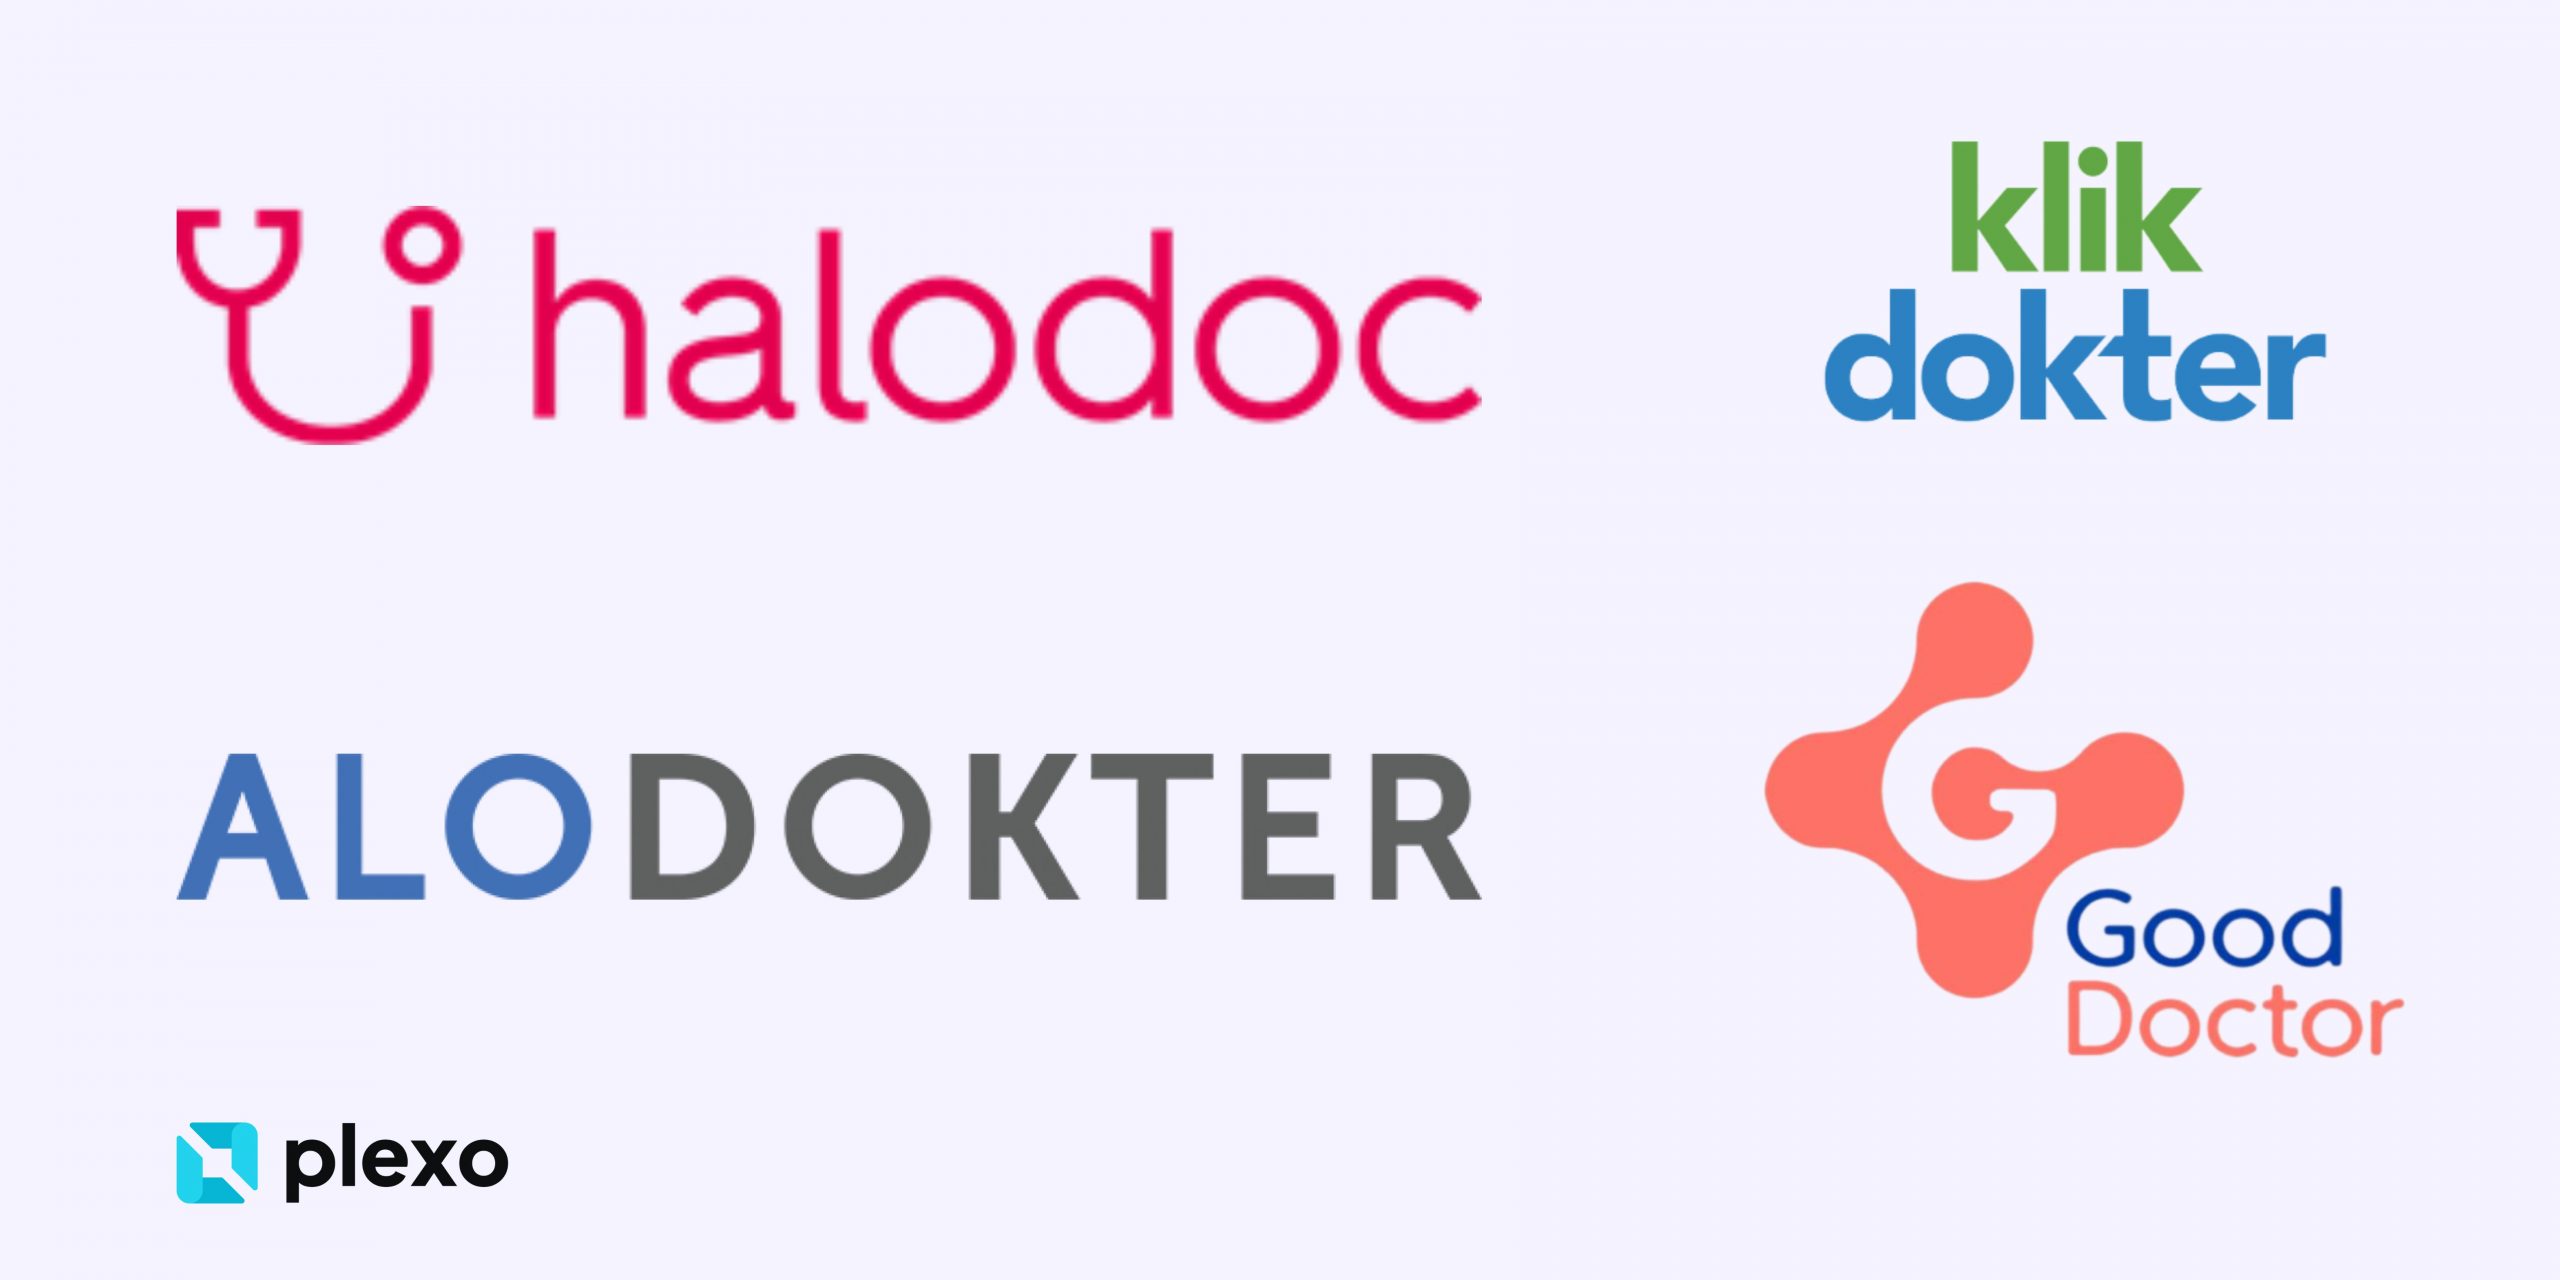 Koleksi logo aplikasi kesehatan telemedicine di Indonesia, seperti Halodoc, Alodokter, Klik Dokter, Good Doctor, dengan logo brand Plexo diletakan di kiri bawah. Fungsi dari aplikasi kesehatan tersebut adalah untuk memudahkan komunikasi antara dokter dan pasien